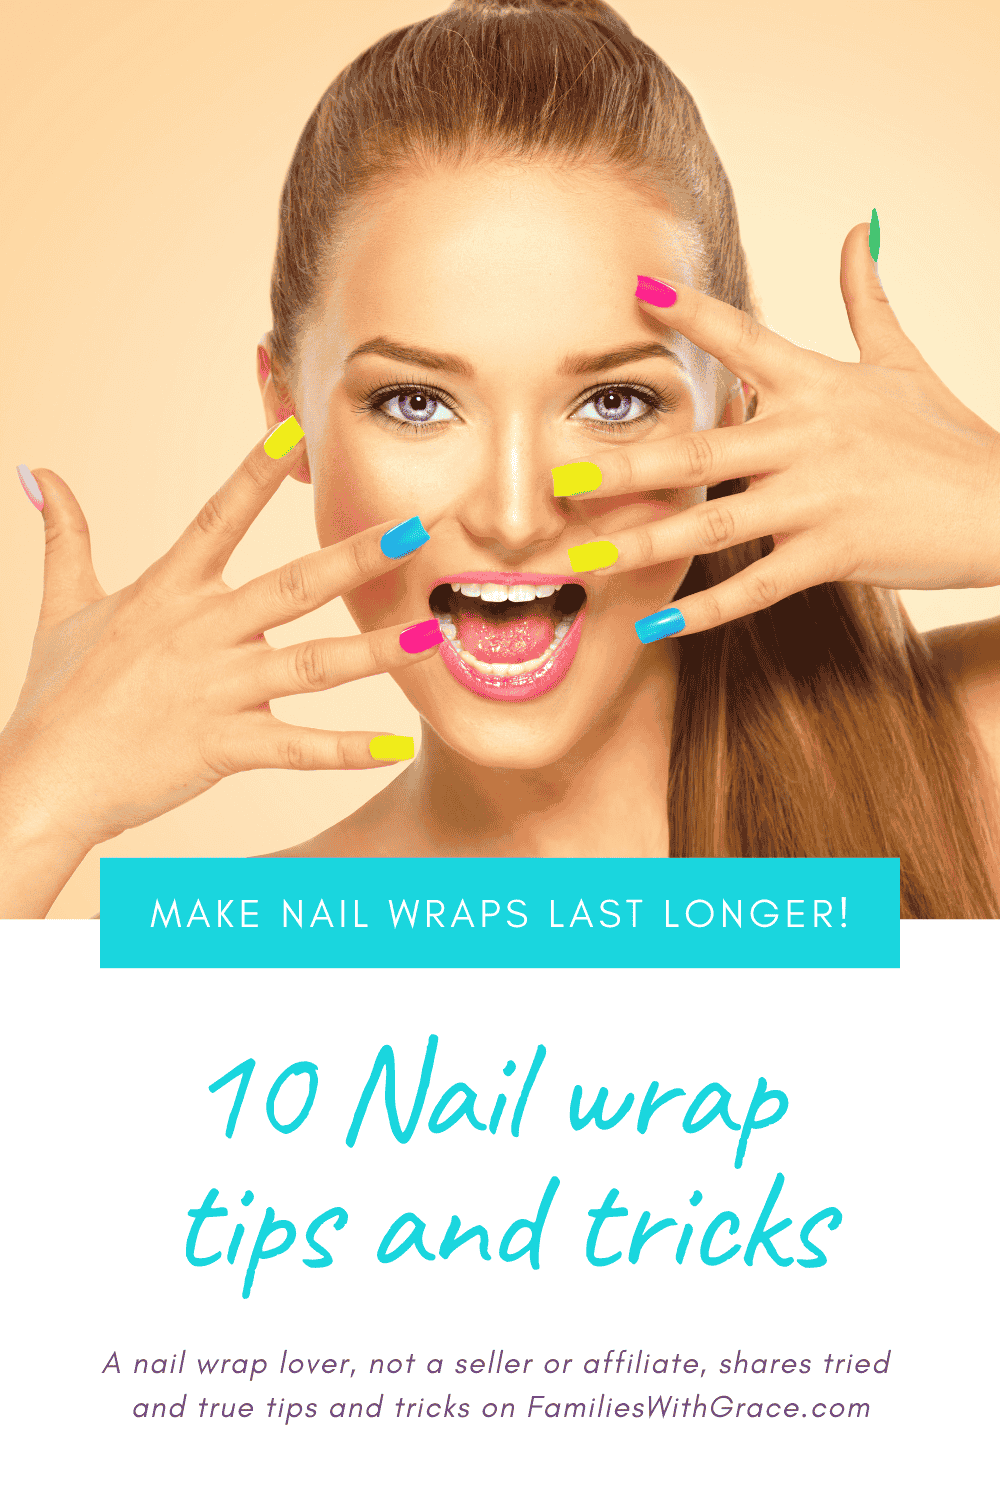 10 Nail wrap tips and tricks